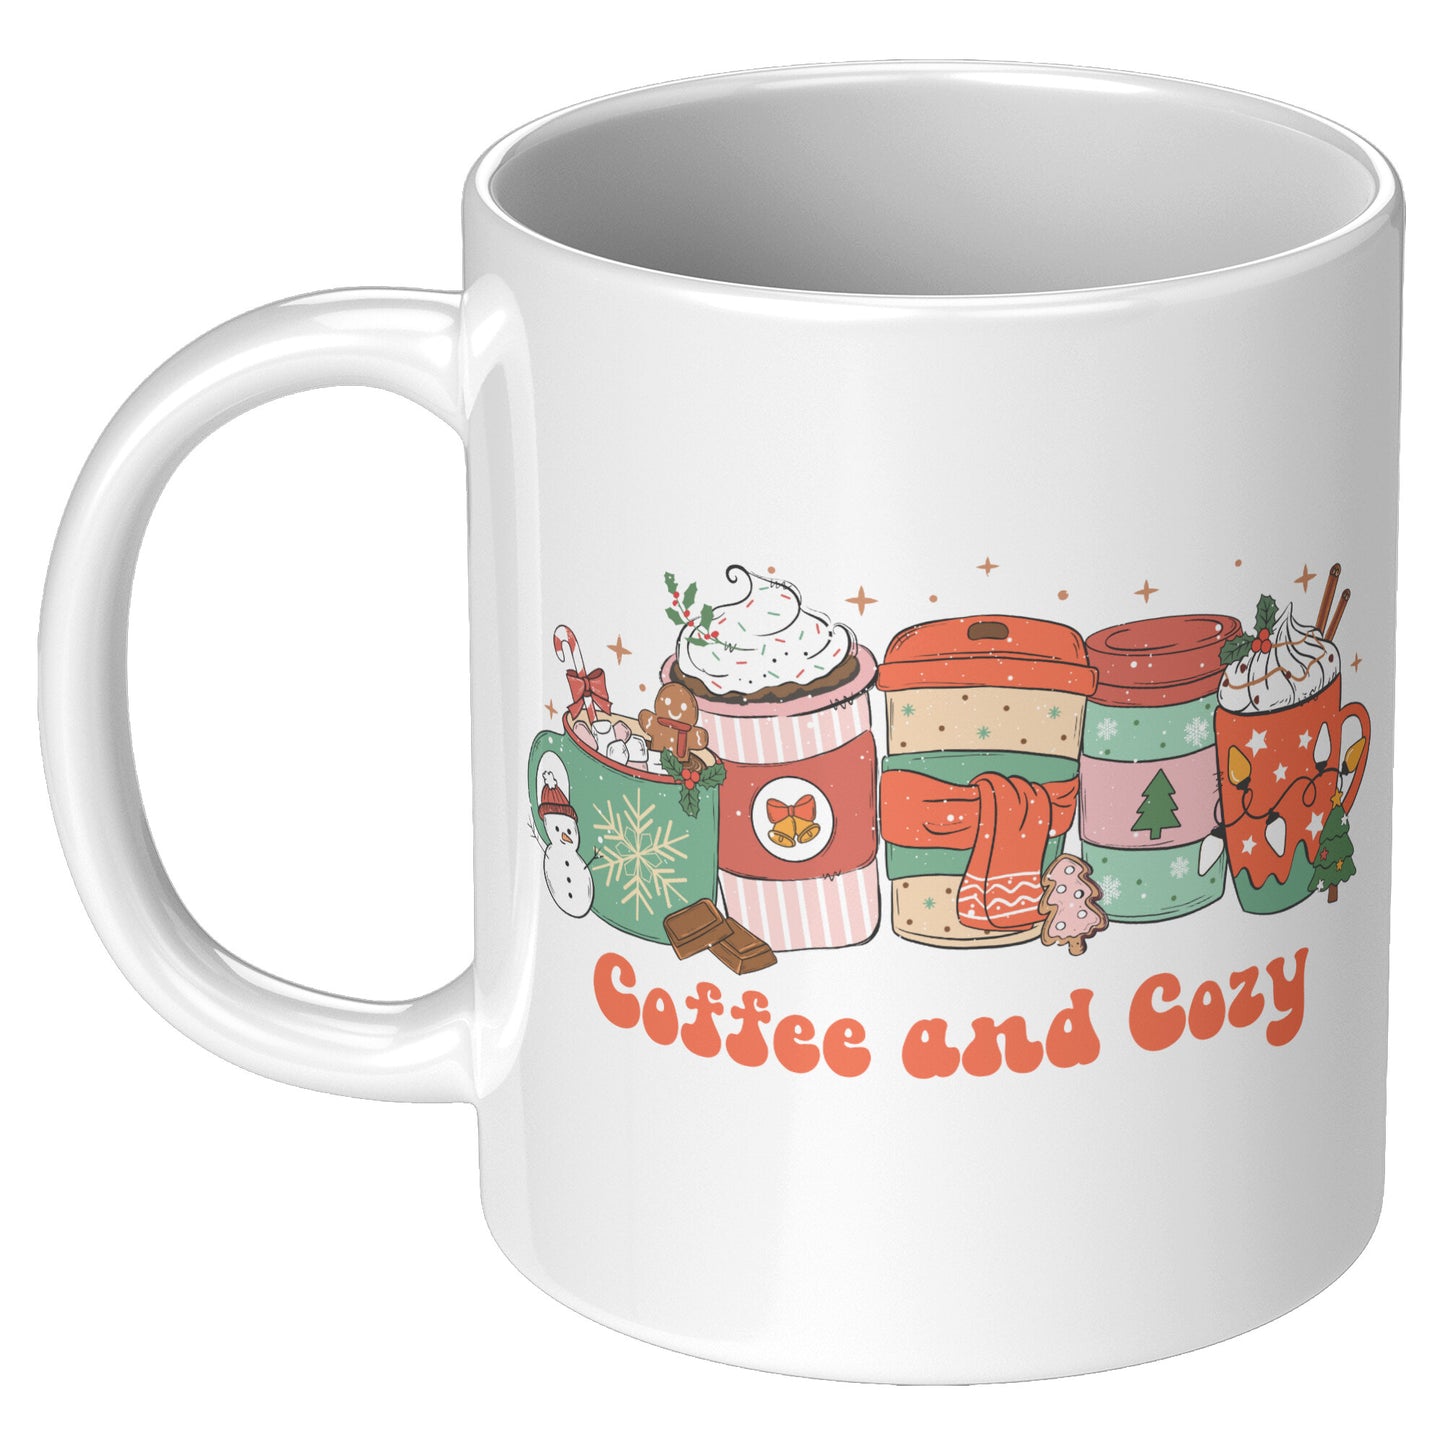 Coffee and Cozy Christmas Coffee Mug